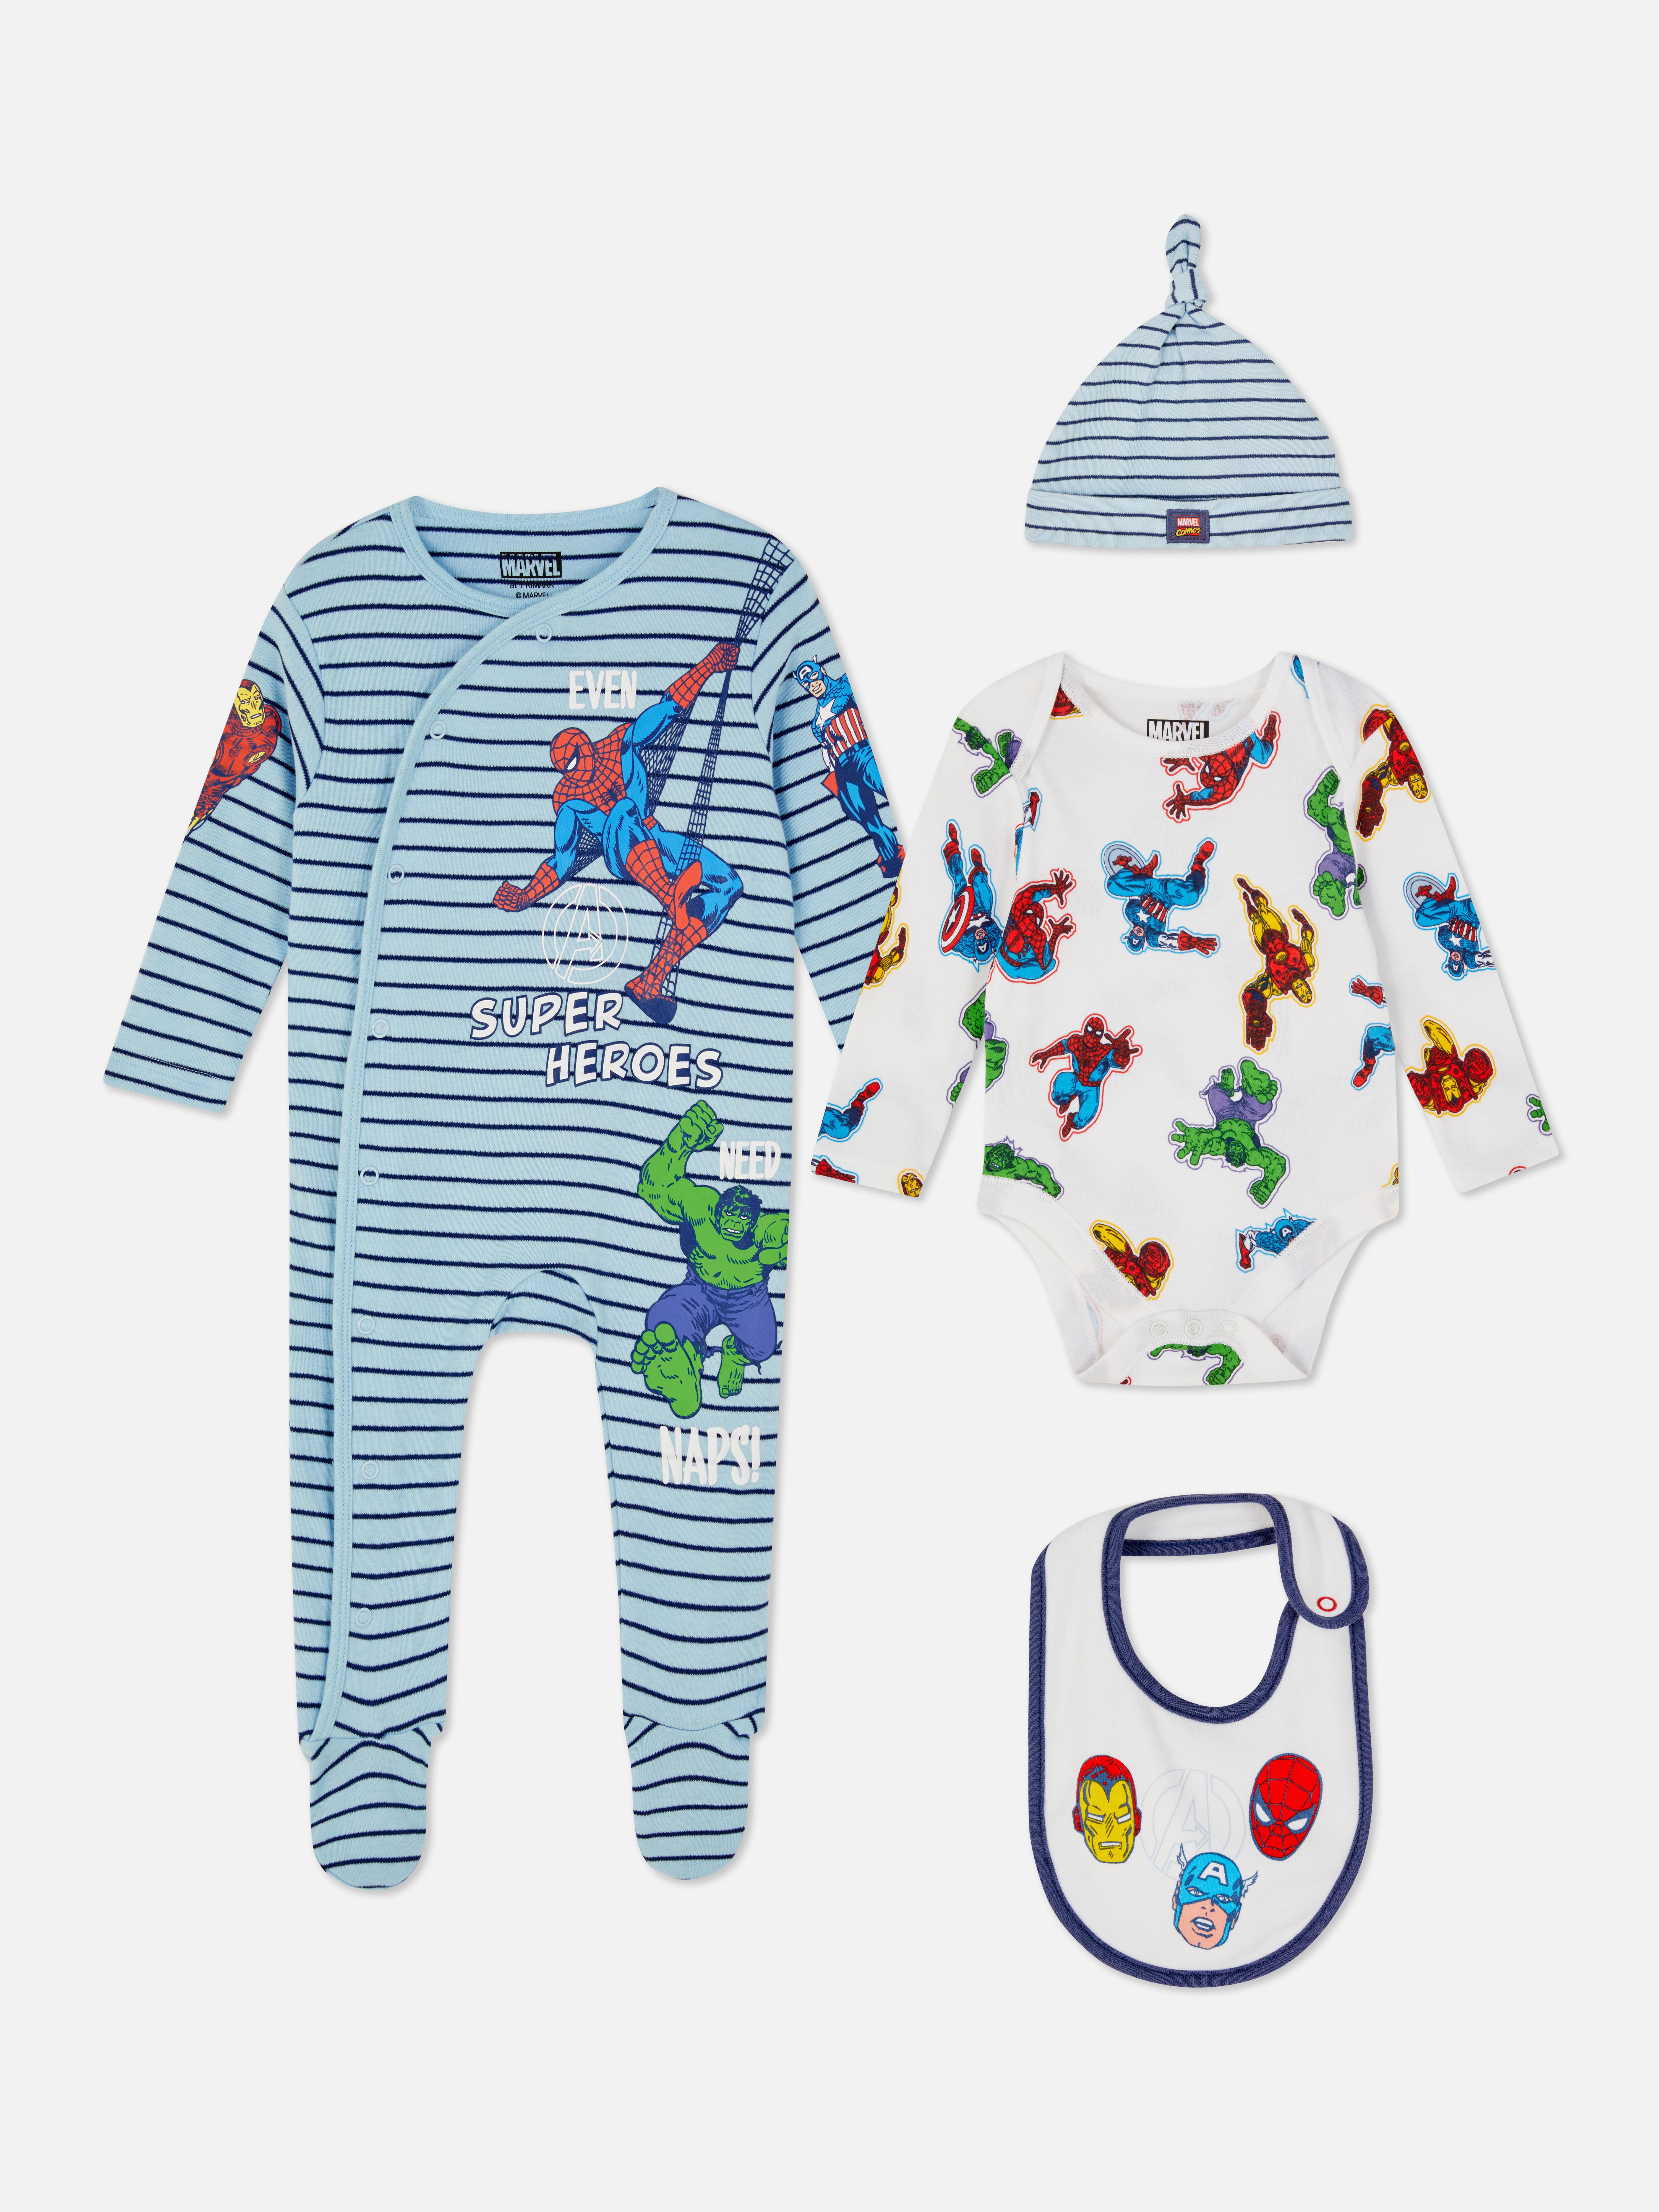 Pack de 4 prendas para recién nacidos de | Básicos de moda para bebé | Moda para bebés y recién nacidos | Ropa para niños | Todos productos Primark | Primark España